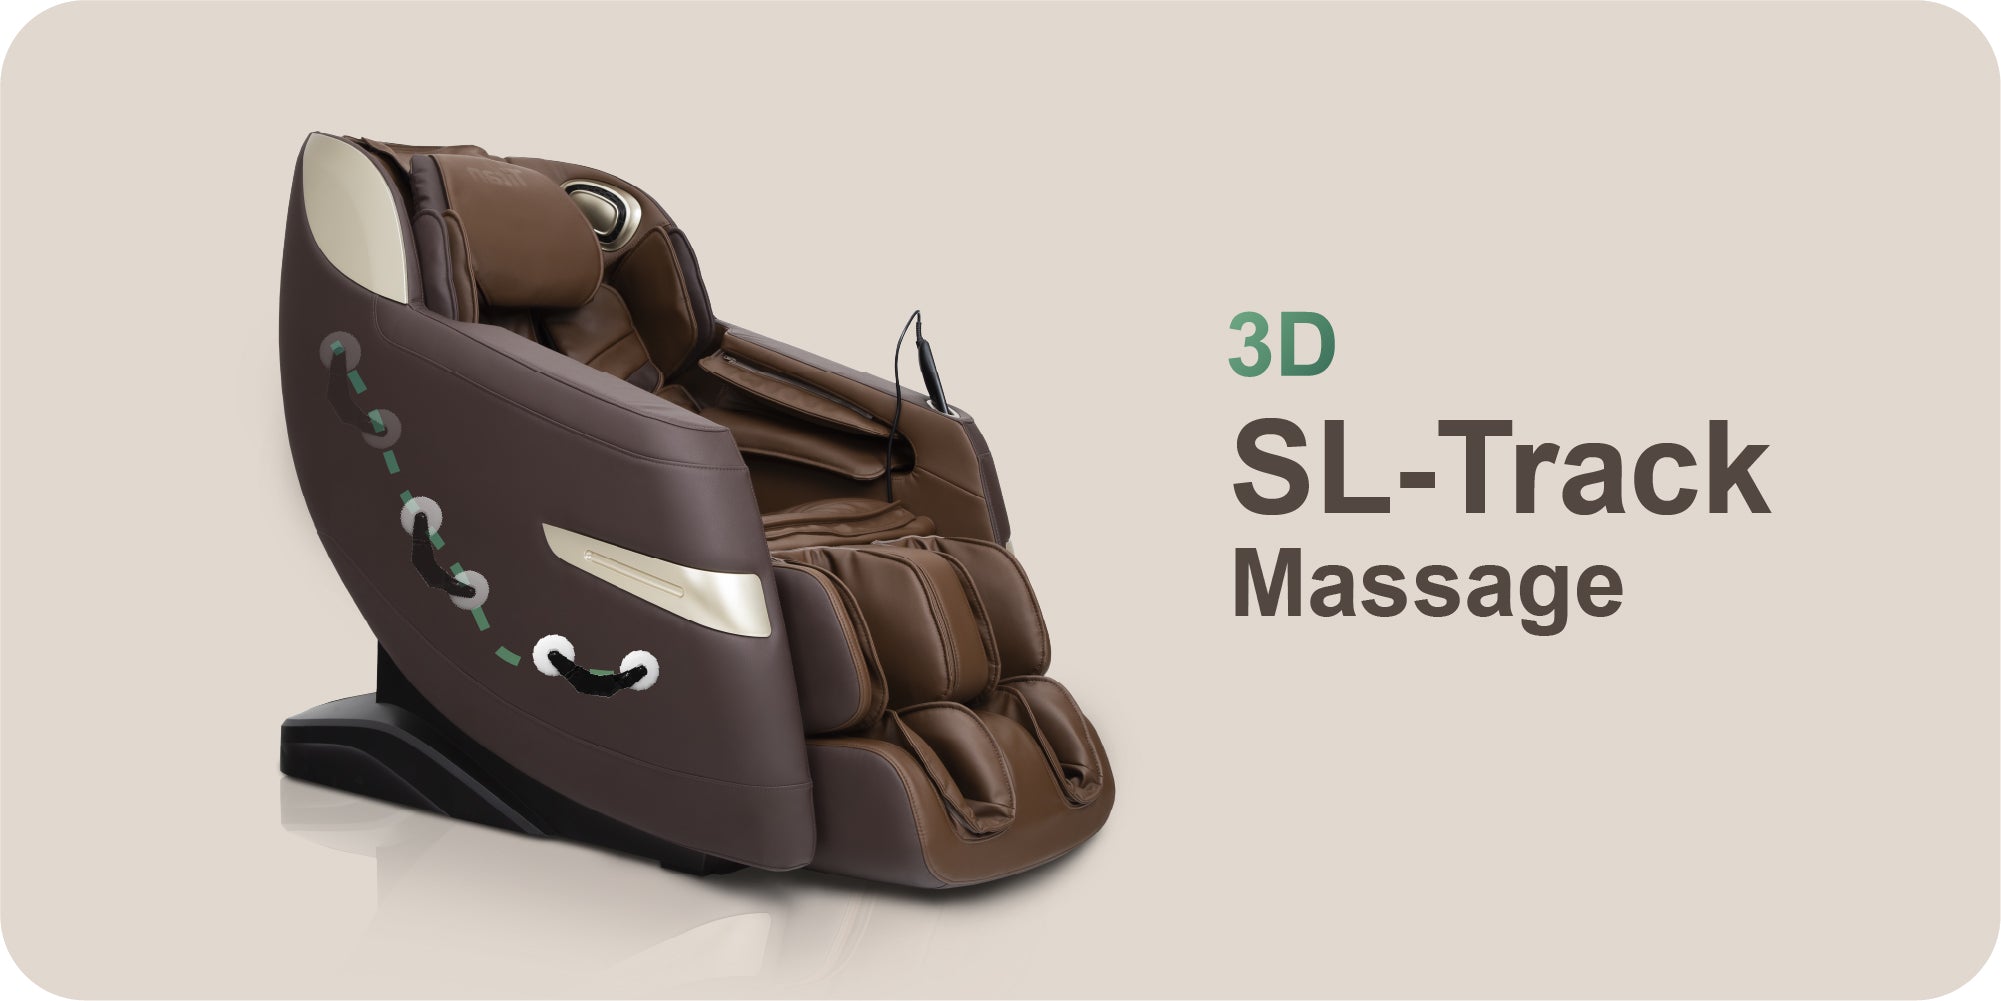 Titan 3D Quantum Full Body Massage Chair, 3D SL-Track Massage